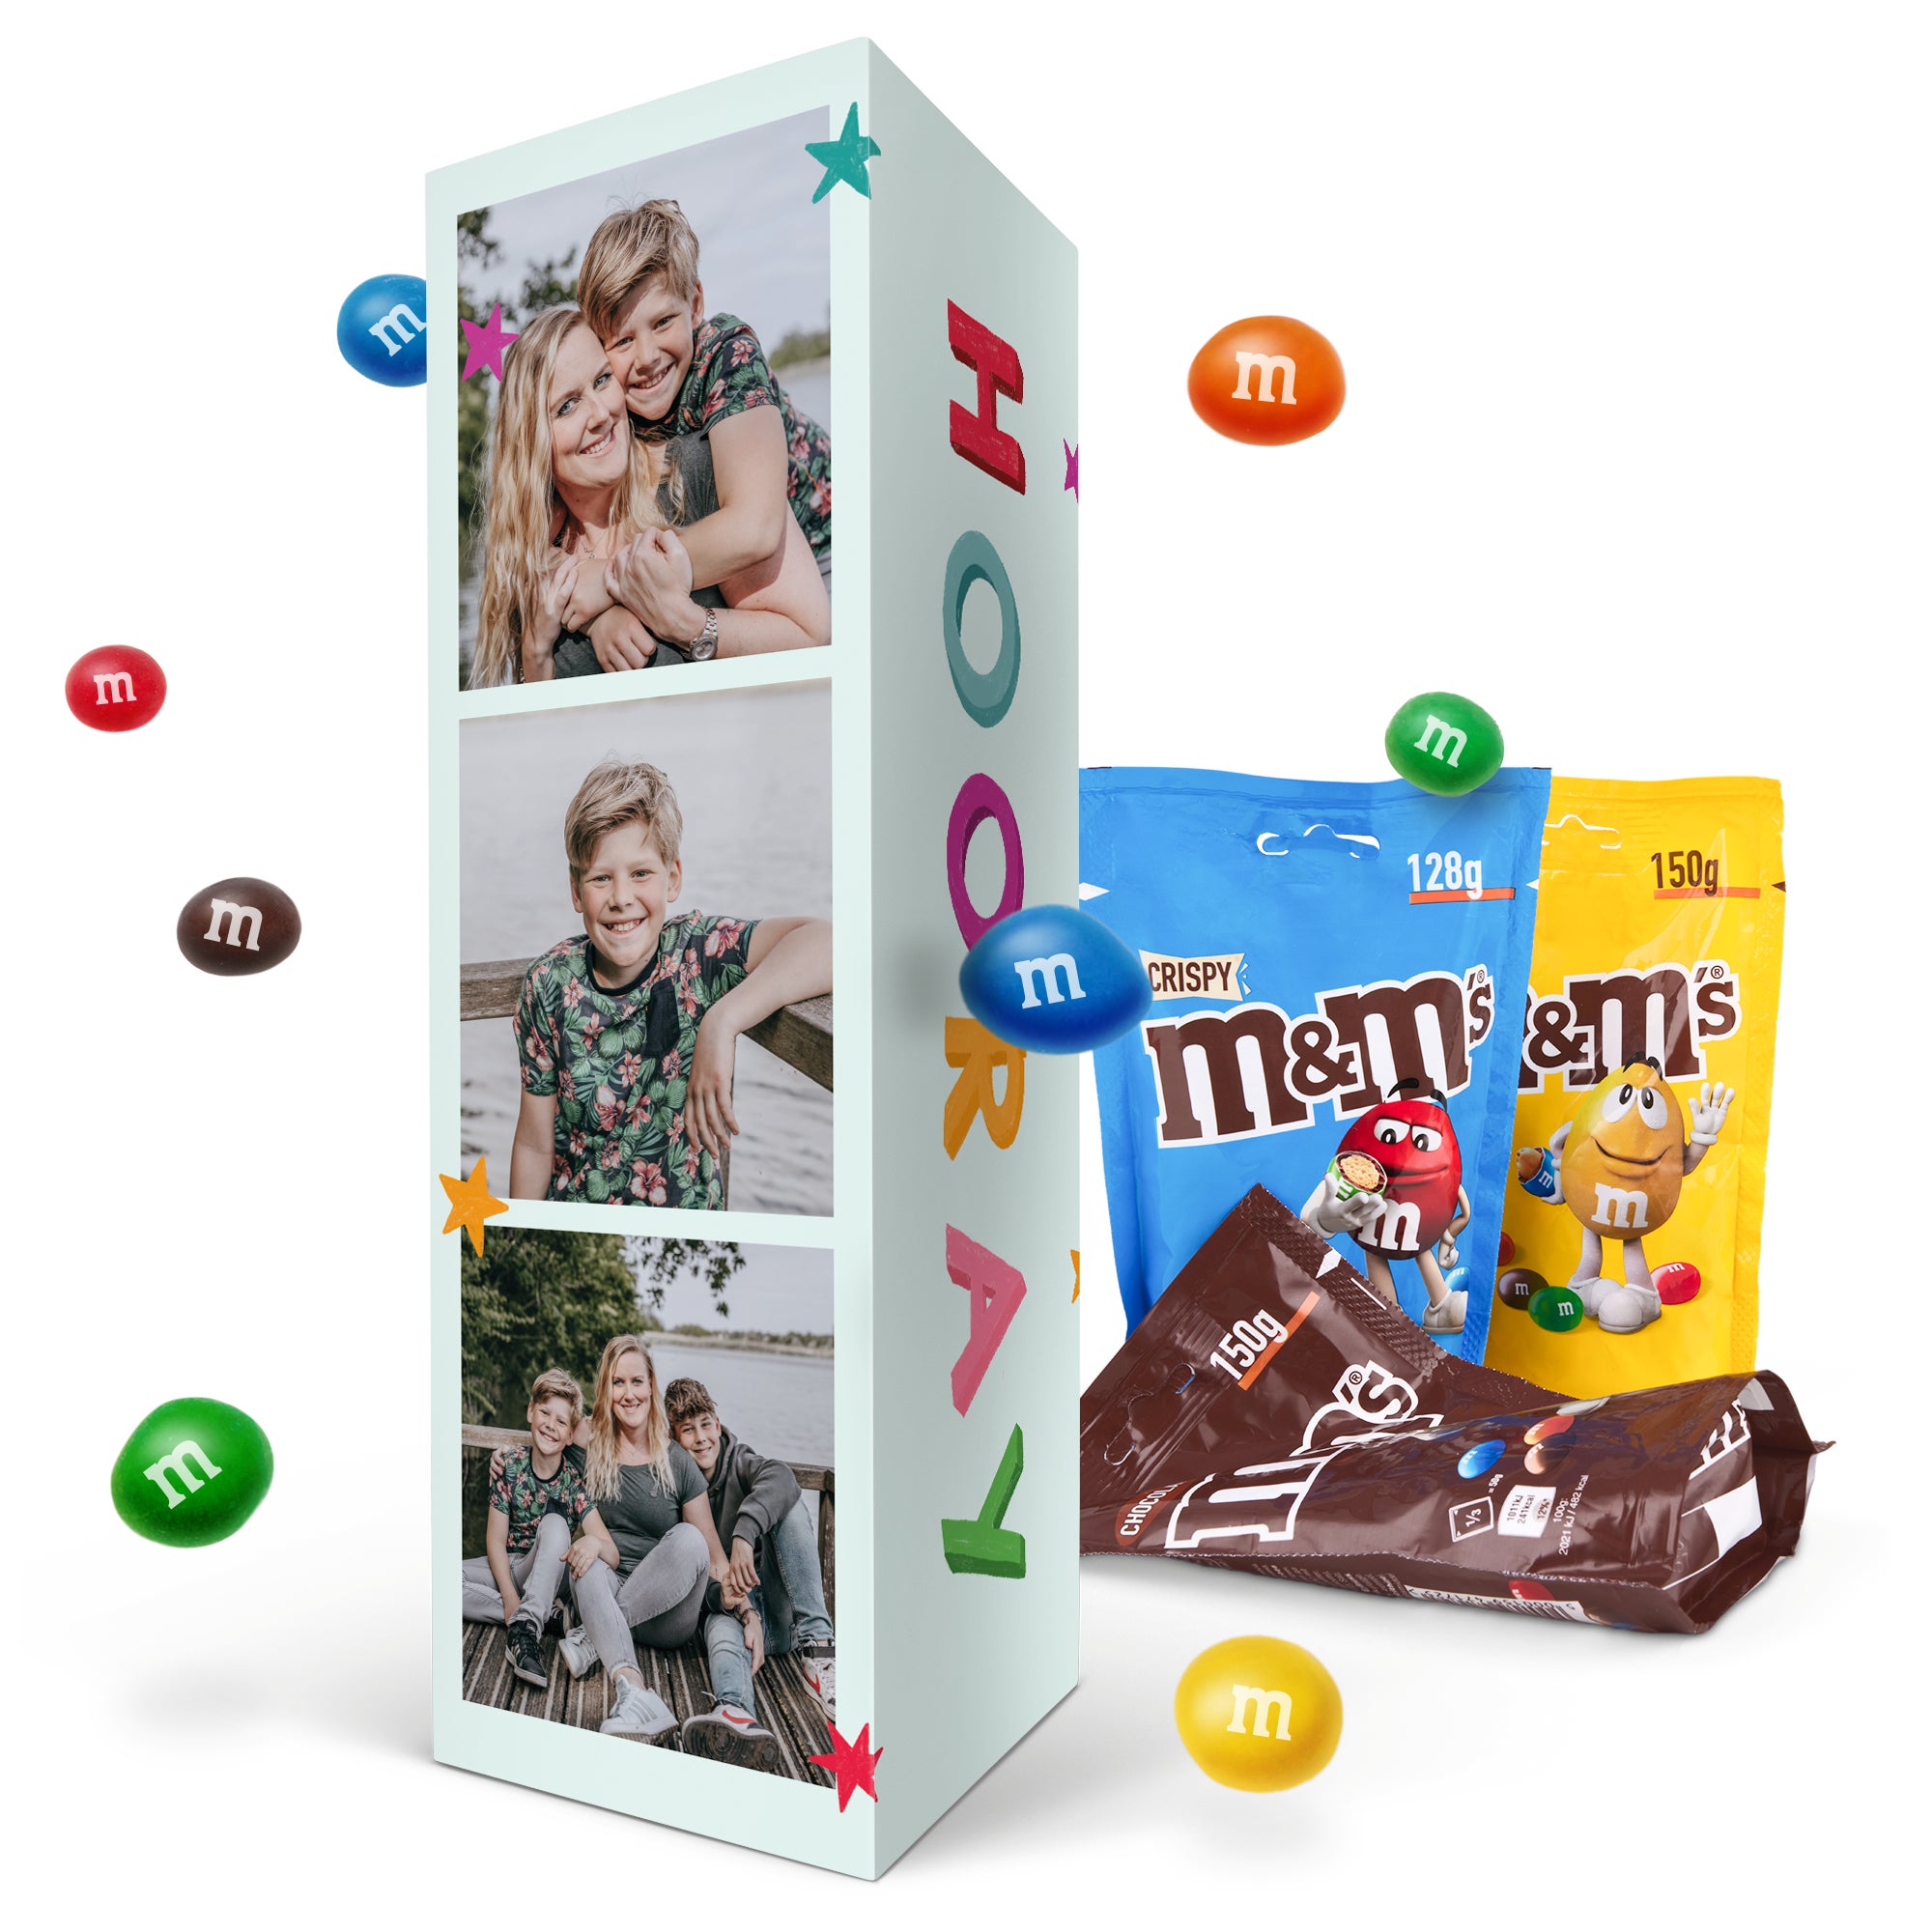 Gepersonaliseerd cadeaupakket met M M's chocolade